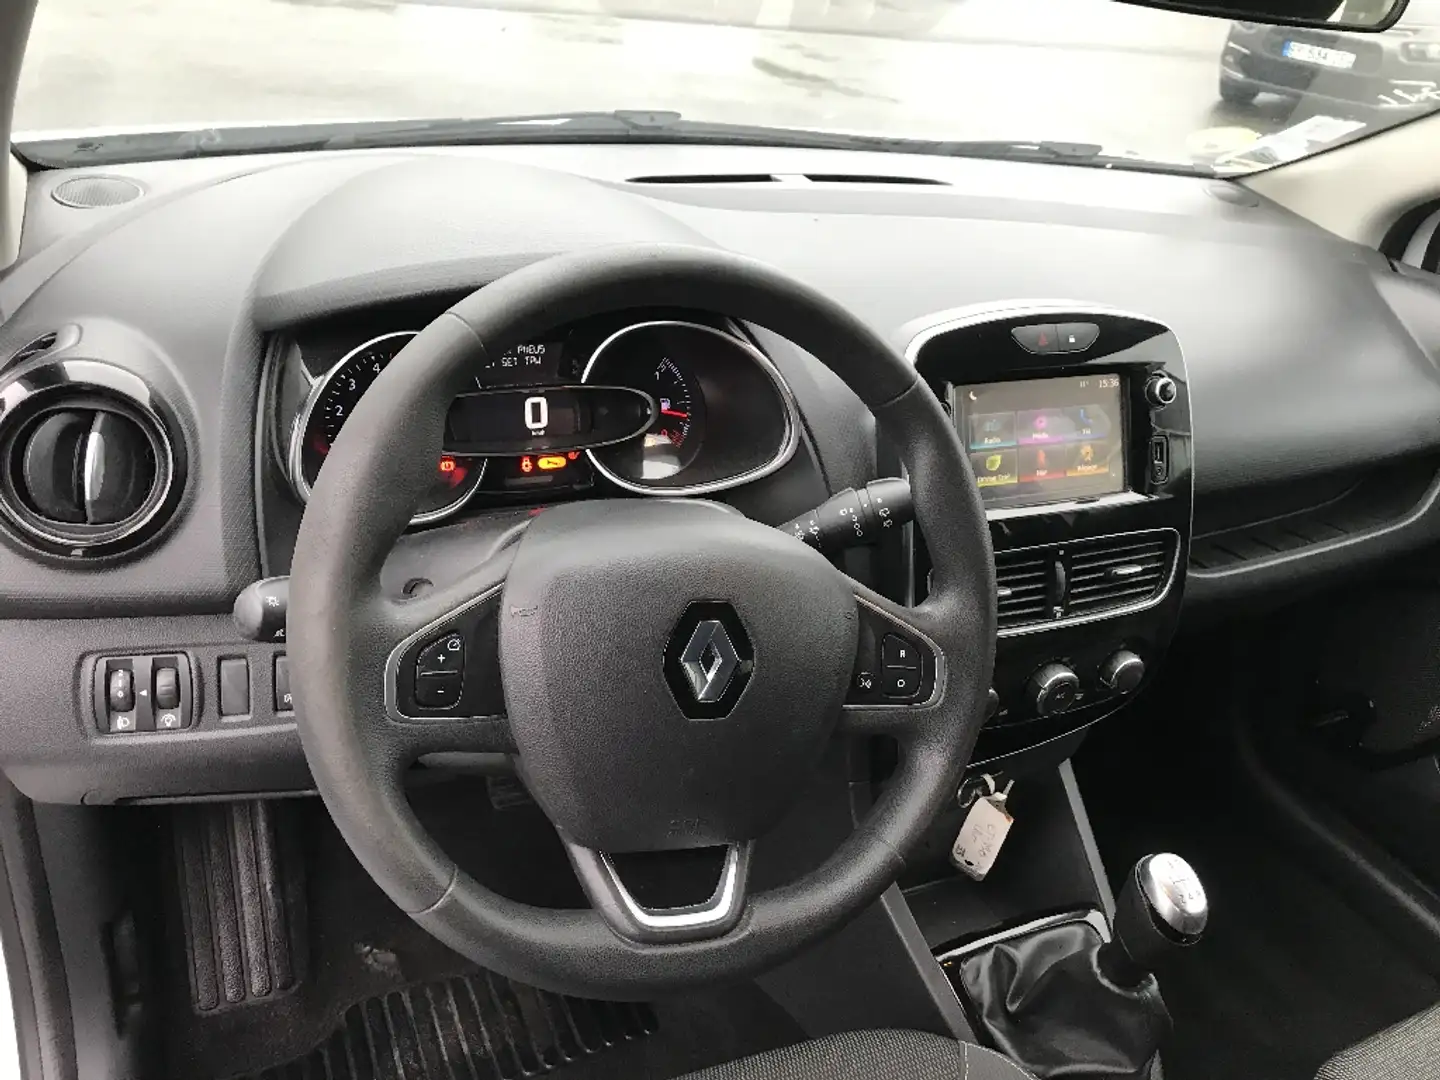 Renault Clio société 1.5 dci 75 cv,GPS - 2